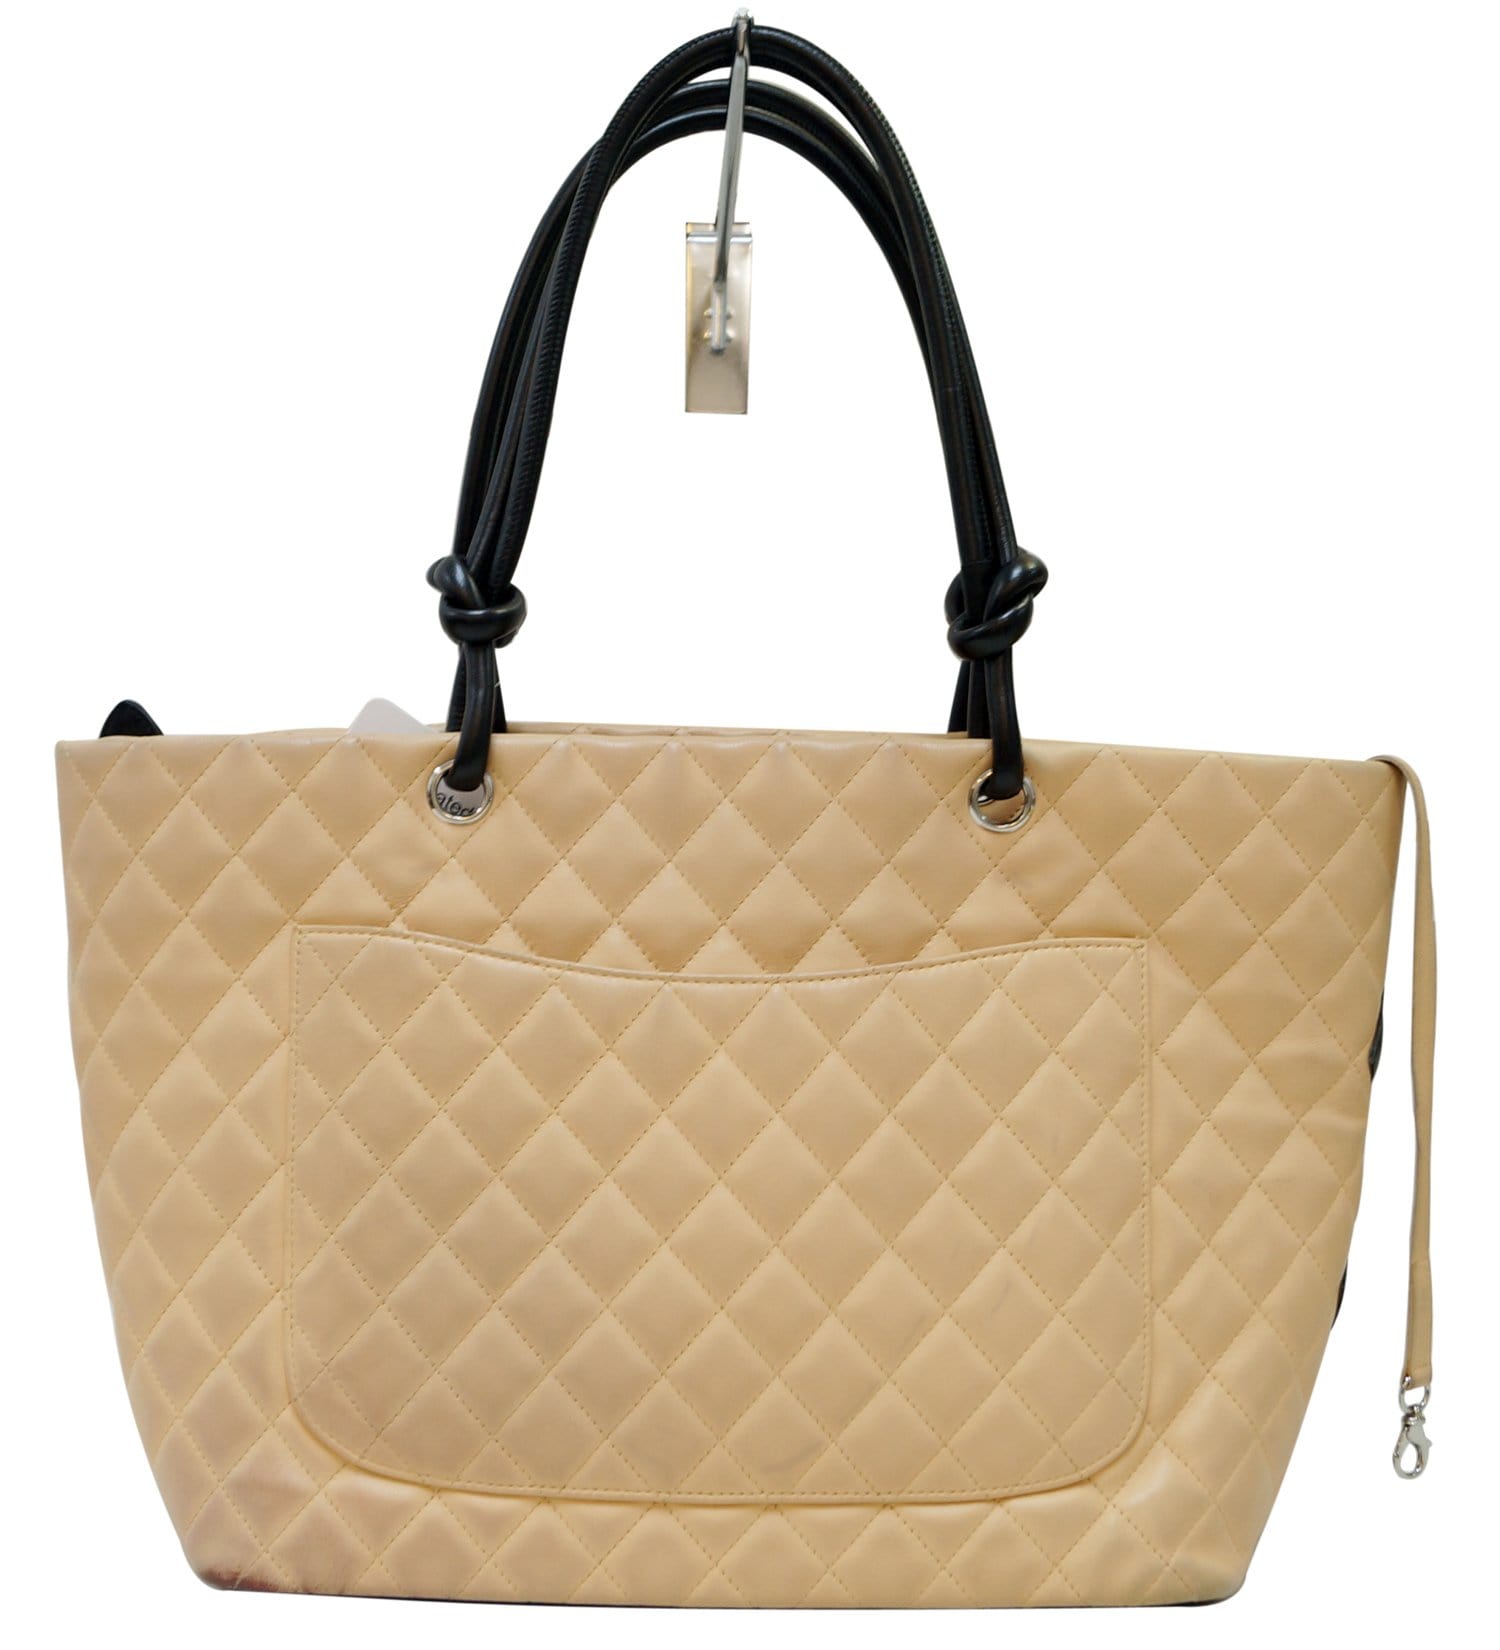 Chanel Coco Cabas Tote - Brown Totes, Handbags - CHA975240